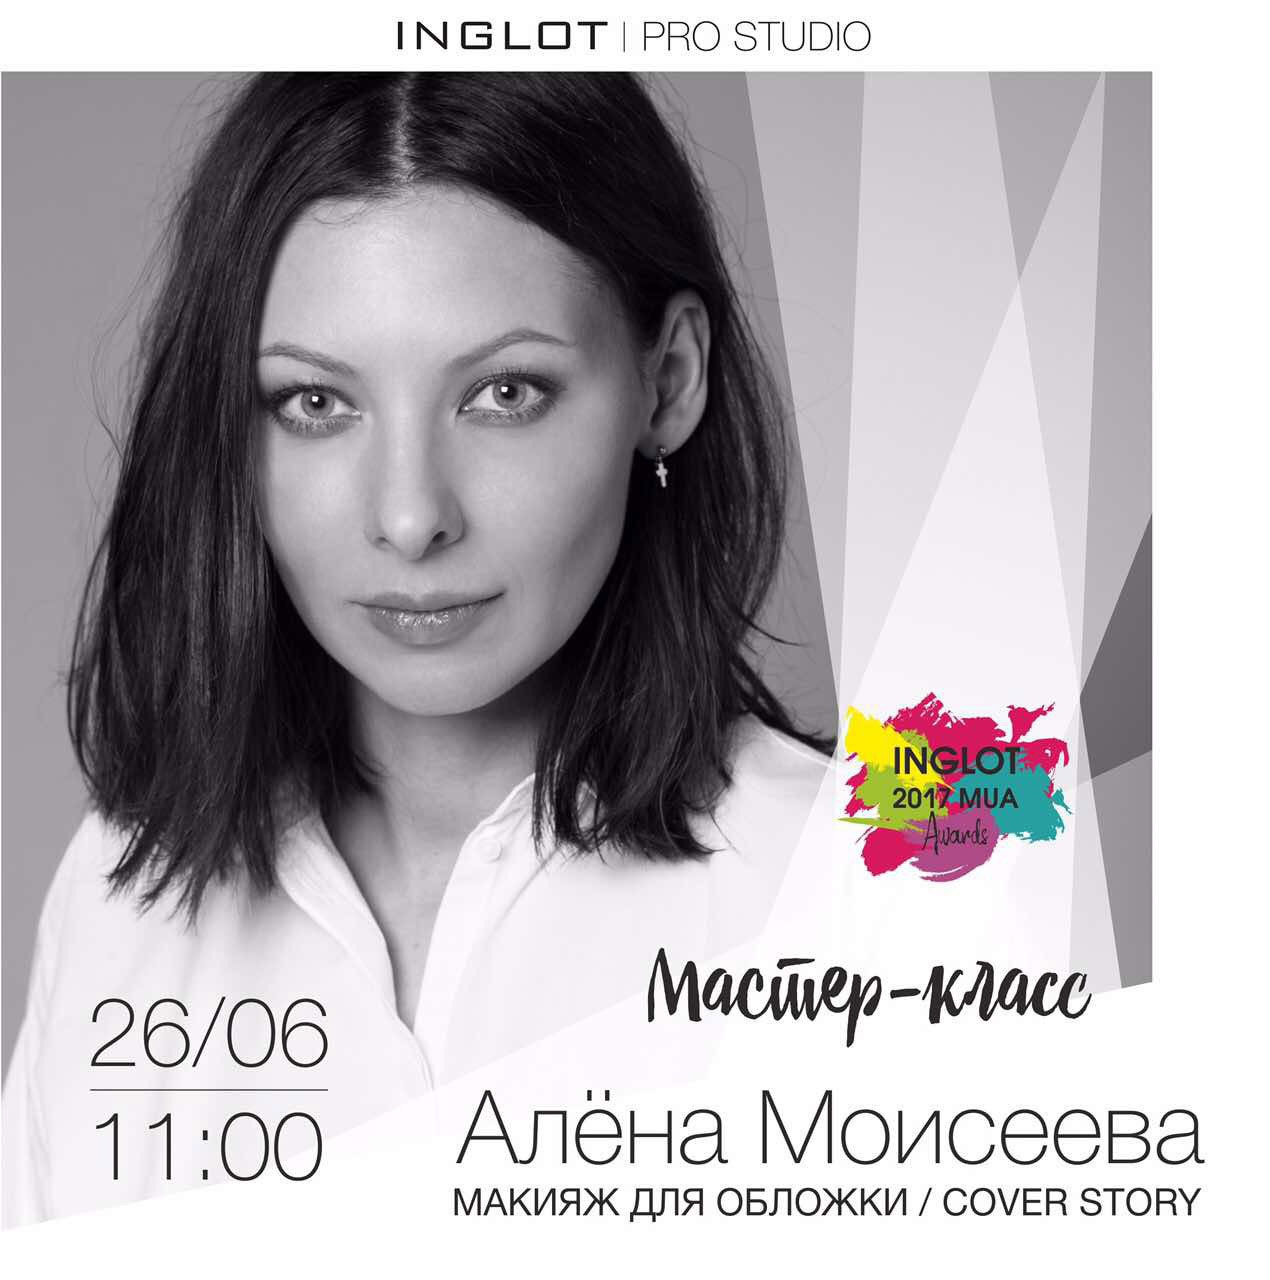 Мастеркласс визажиста Алены Моисеевой в рамках конкурса Inglot Mua Awards 2017 пройдет 26 июня